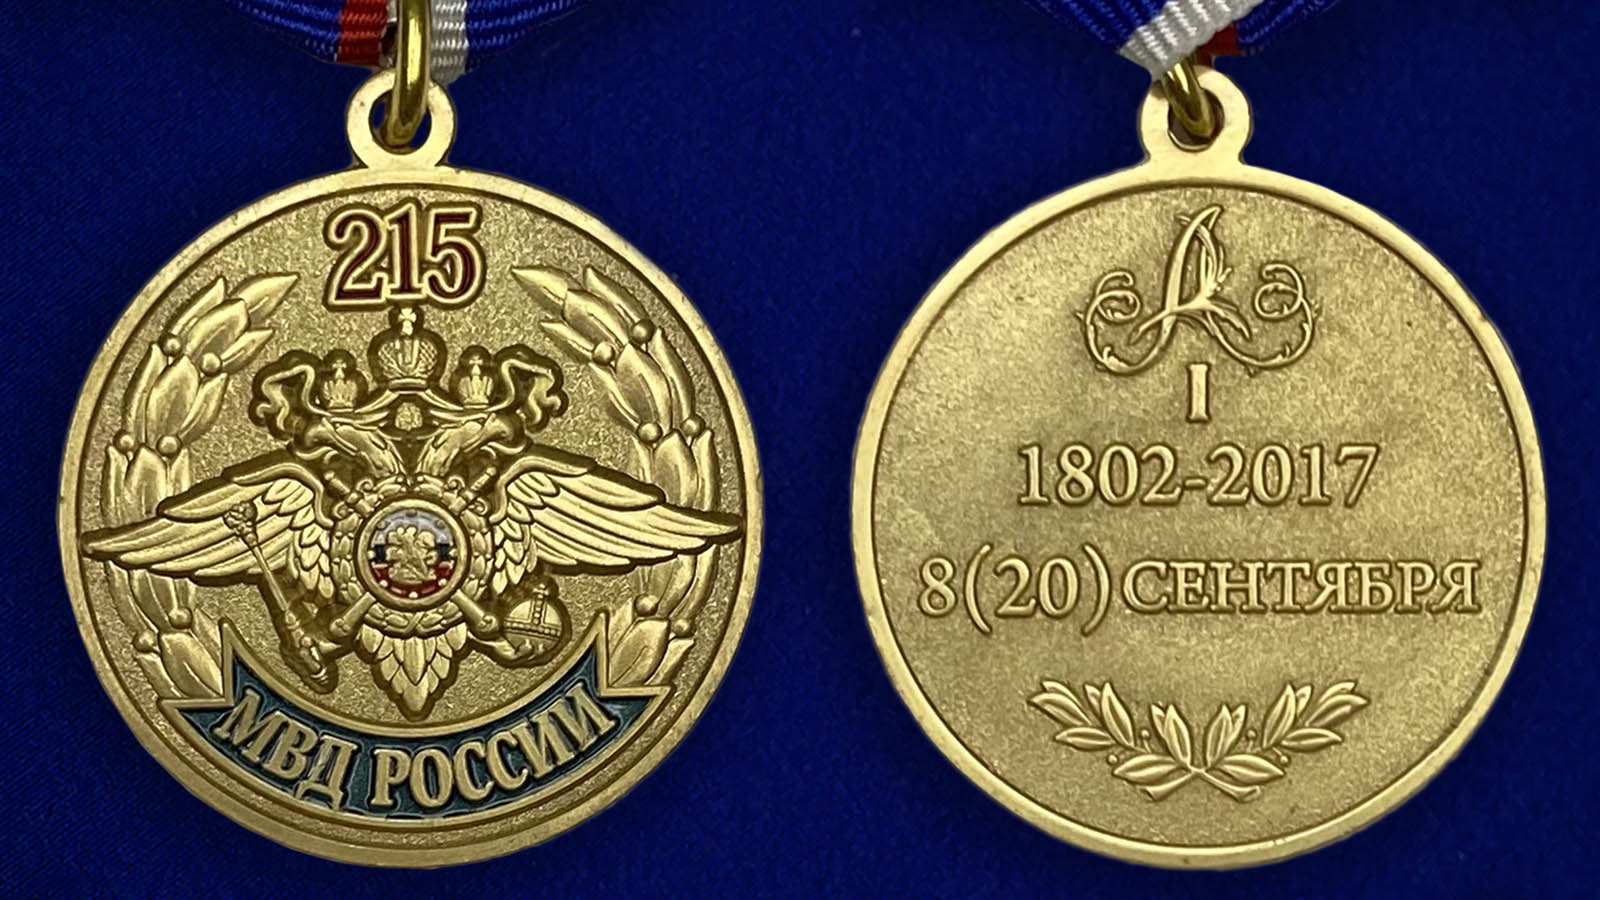 Купить медаль "215 лет МВД России" недорого с доставкой